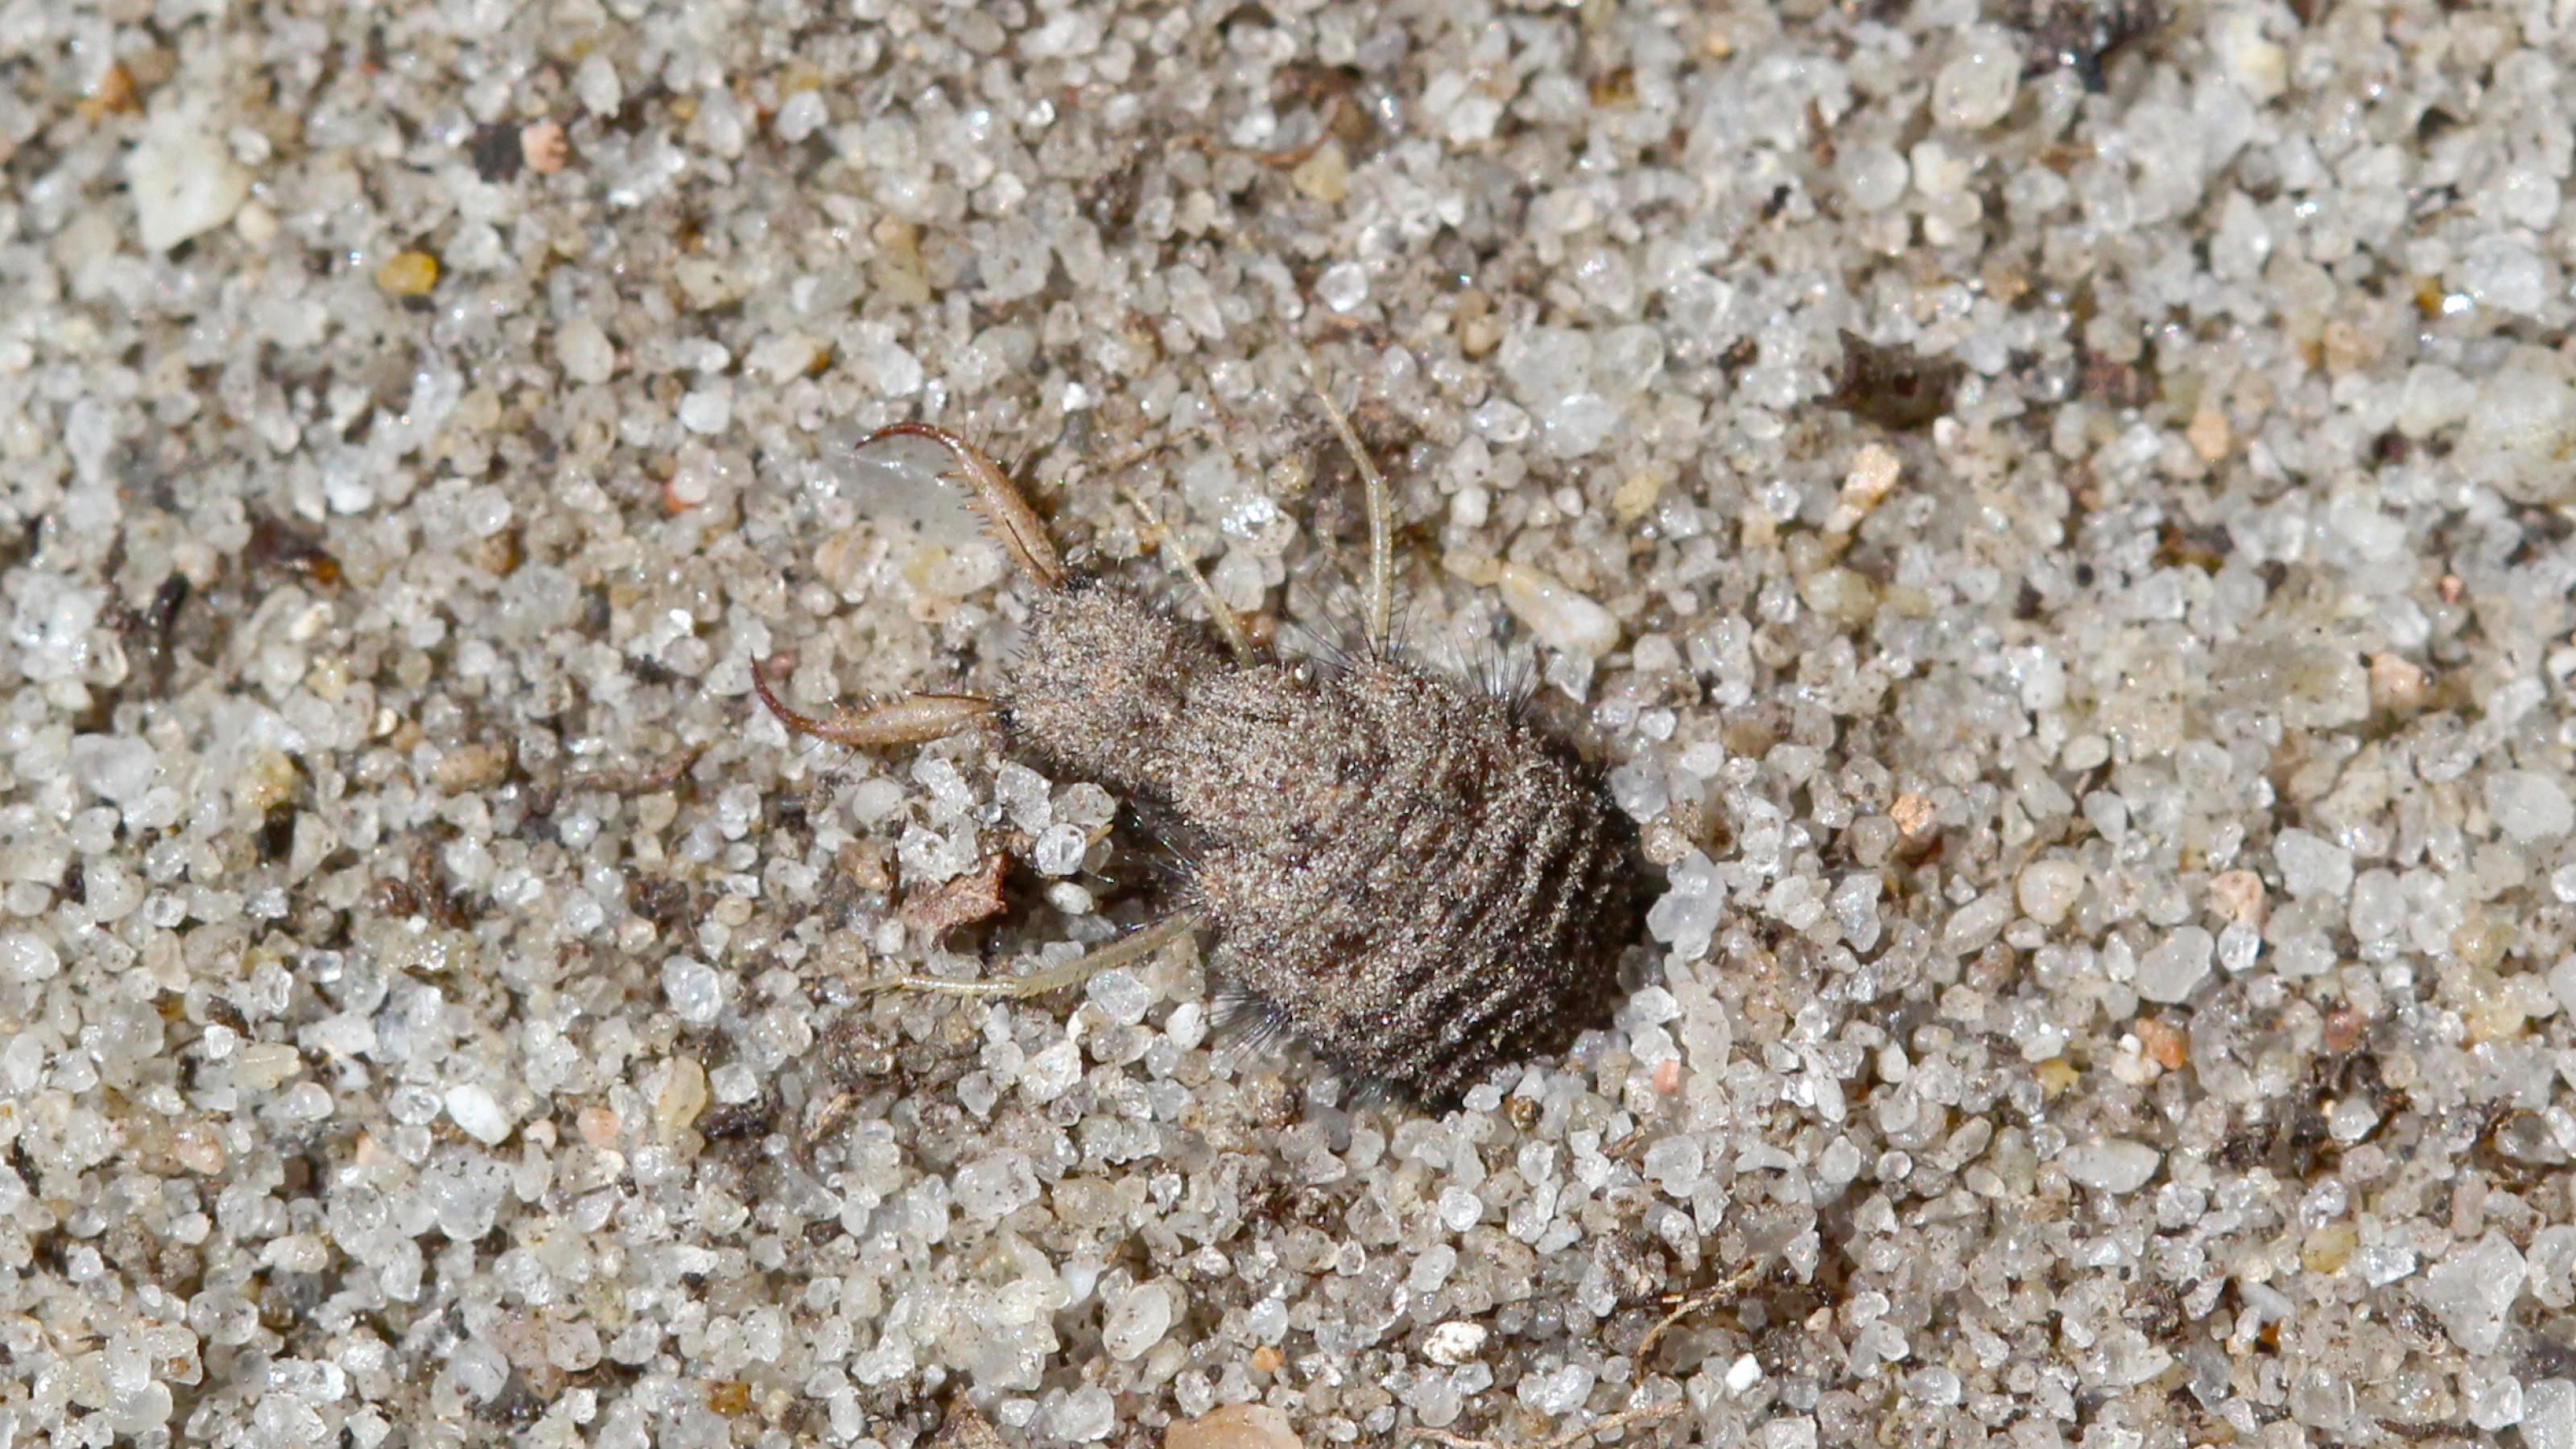 Ein braun-beige gezeichnetes Insekt mit rundlichem Hinterteil und einem kleinen, flachen Kopf mit riesigen Greifkiefern sitzt auf sandigem Untergrund.